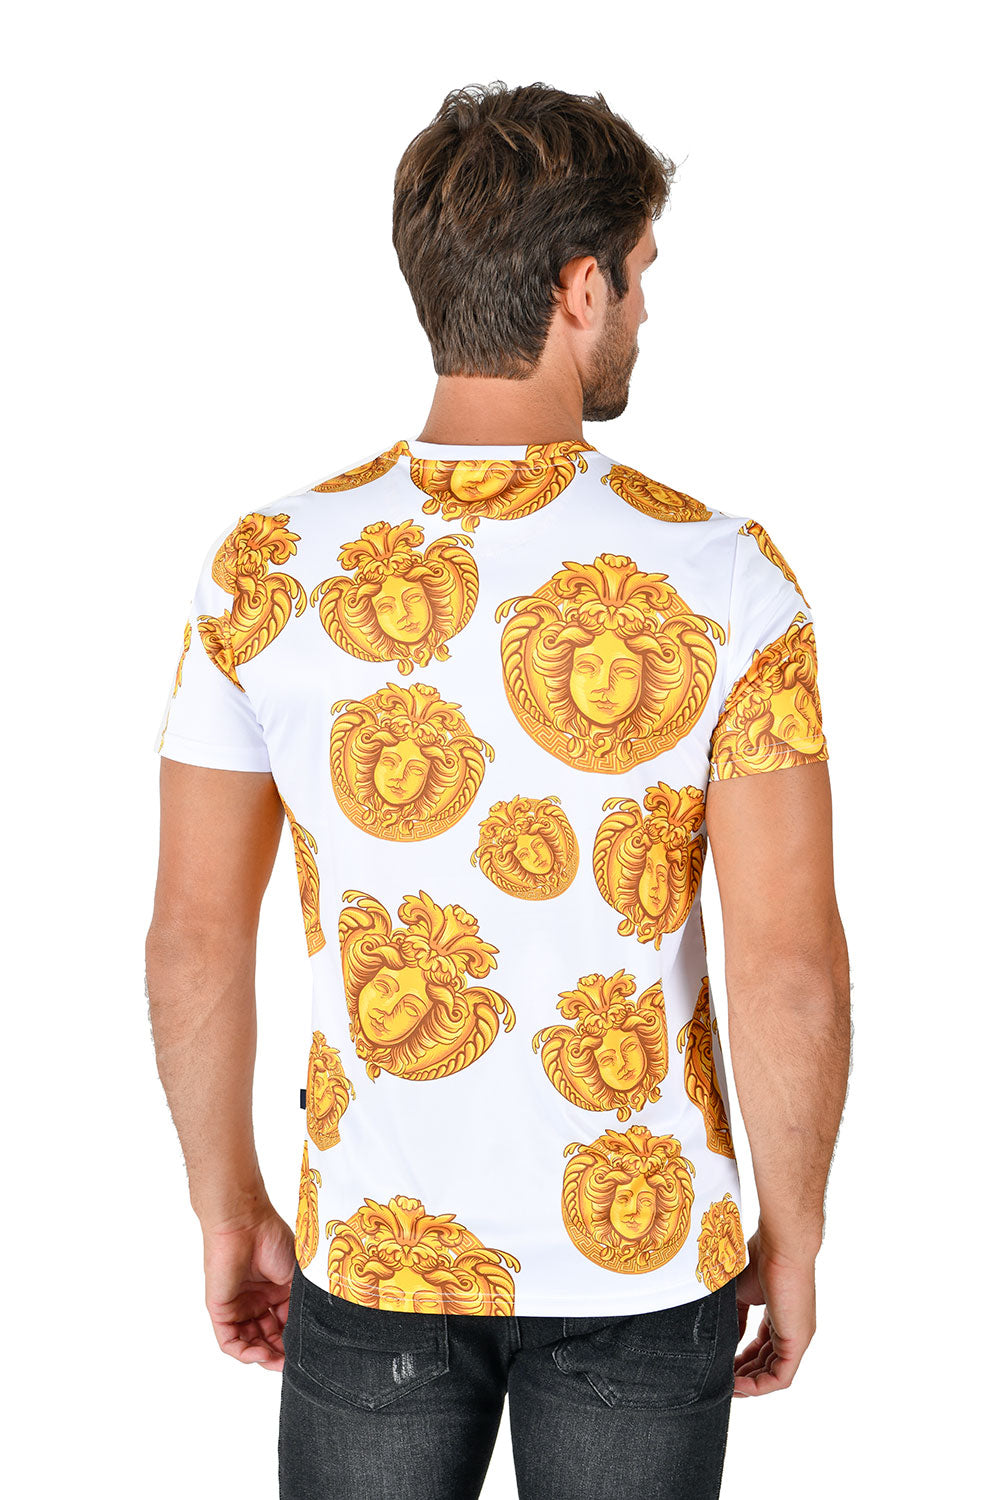 Barabas men's Medusa Greek Key Pattern Crew Neck T-Shirt STP3005 White Gold